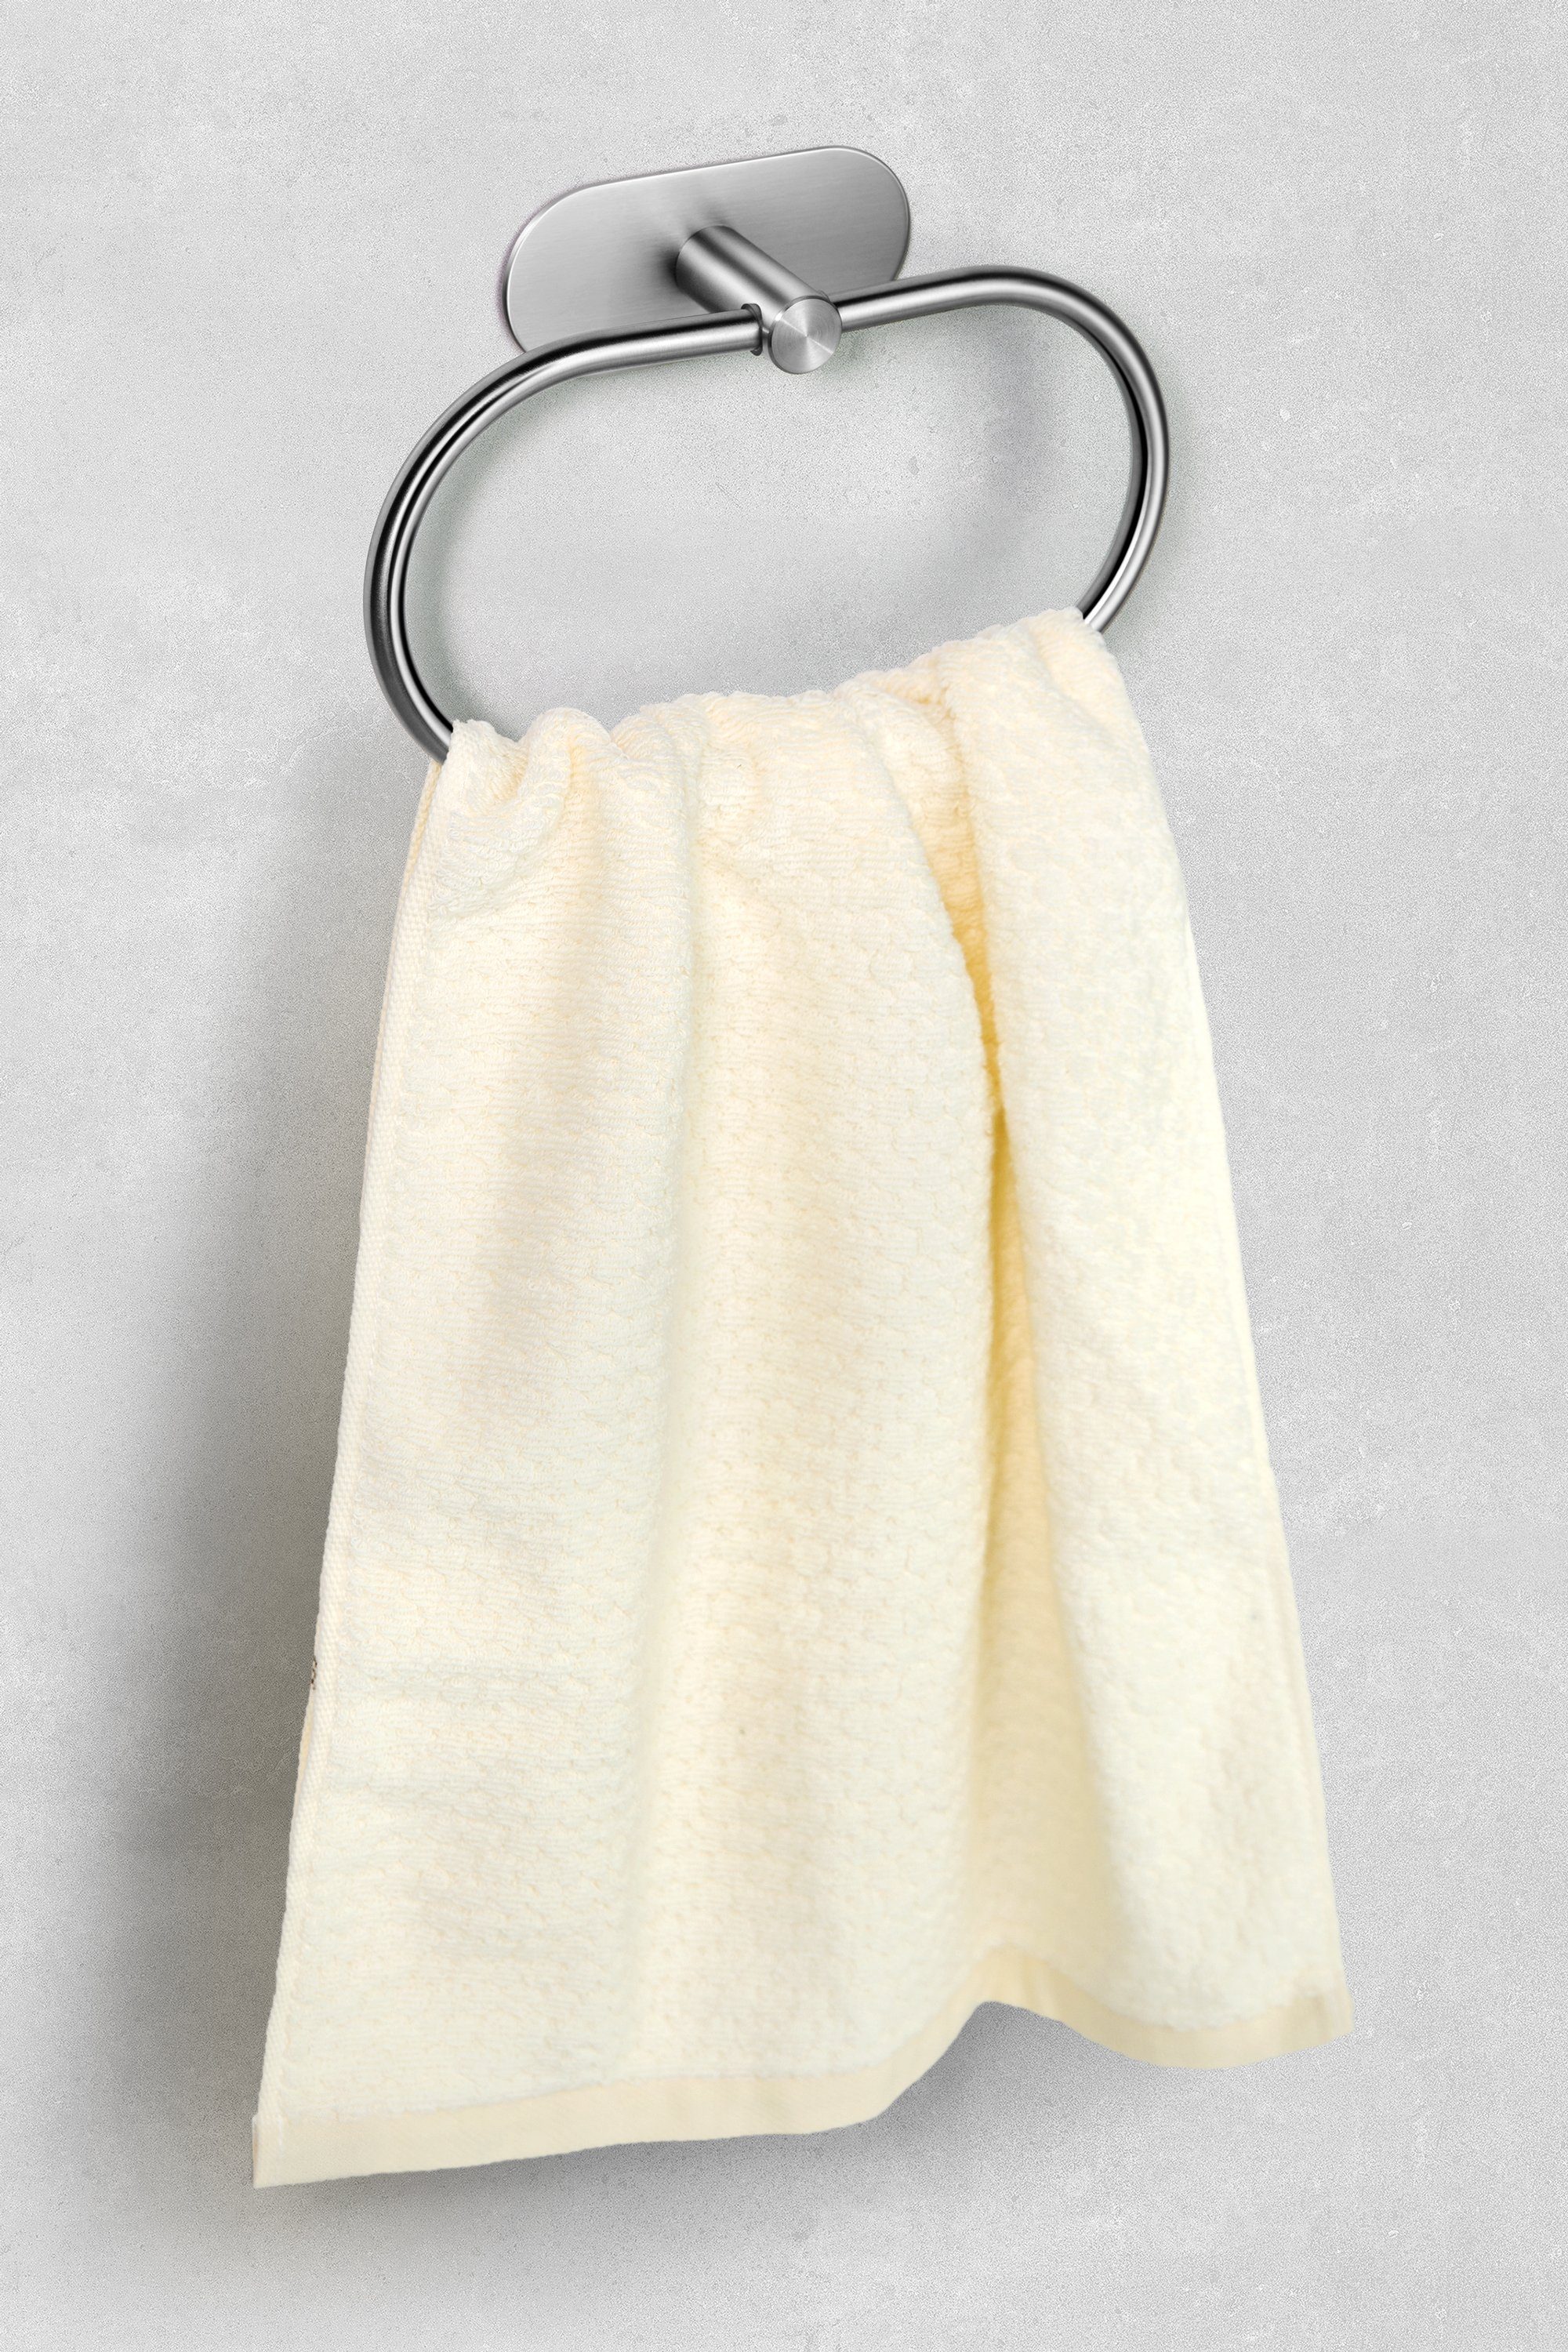 Halter Silber Bad Selbstklebender Handtuch Edelstahl Montage Küche, Handtuchring WC Klebend Haken Ambrosya Handtuchhaken Handtuchhalter Einfache aus Klebehaken